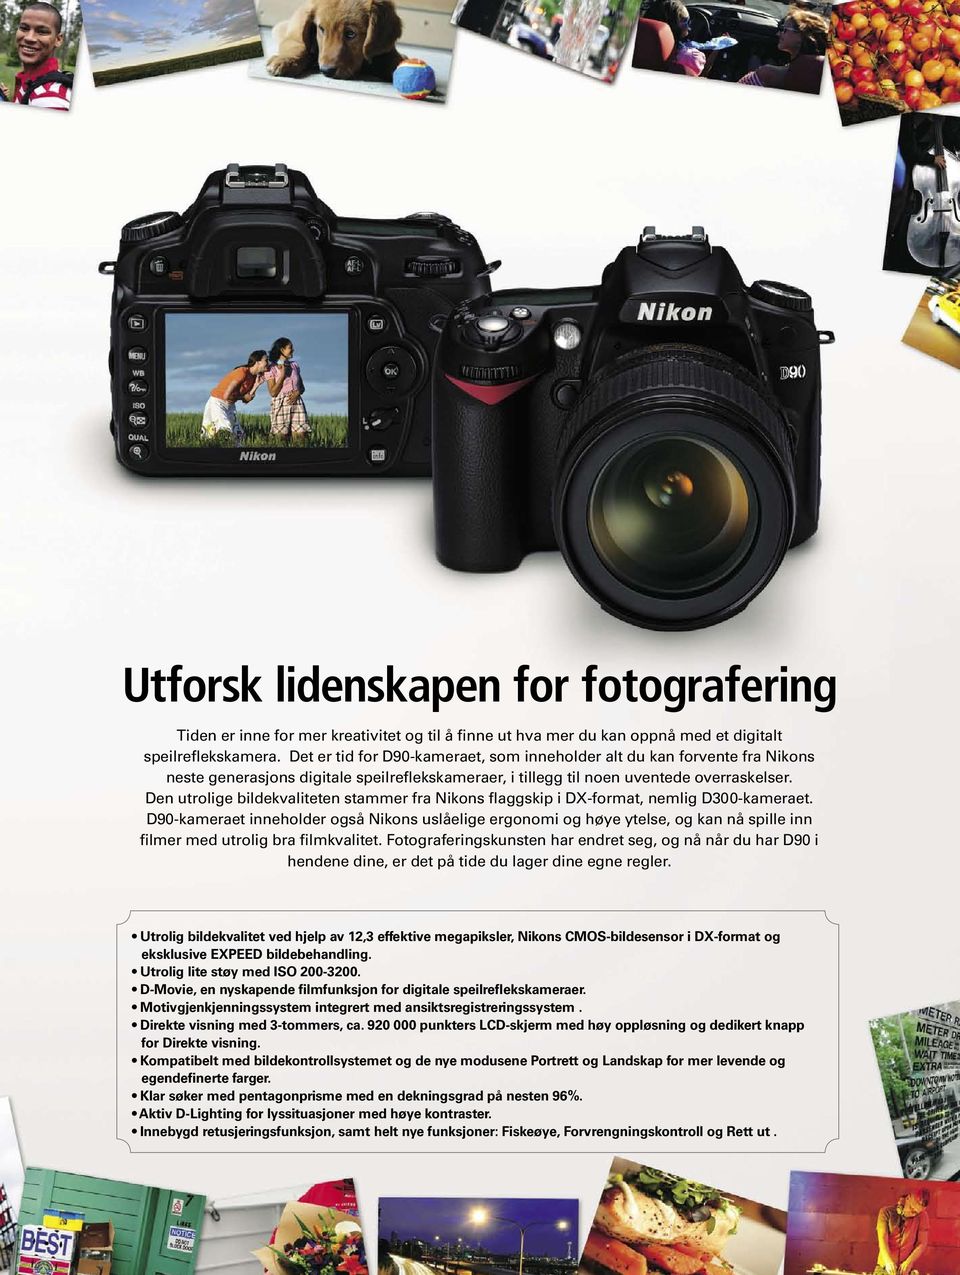 Den utrolige bildekvaliteten stammer fra Nikons flaggskip i DX-format, nemlig D300-kameraet.